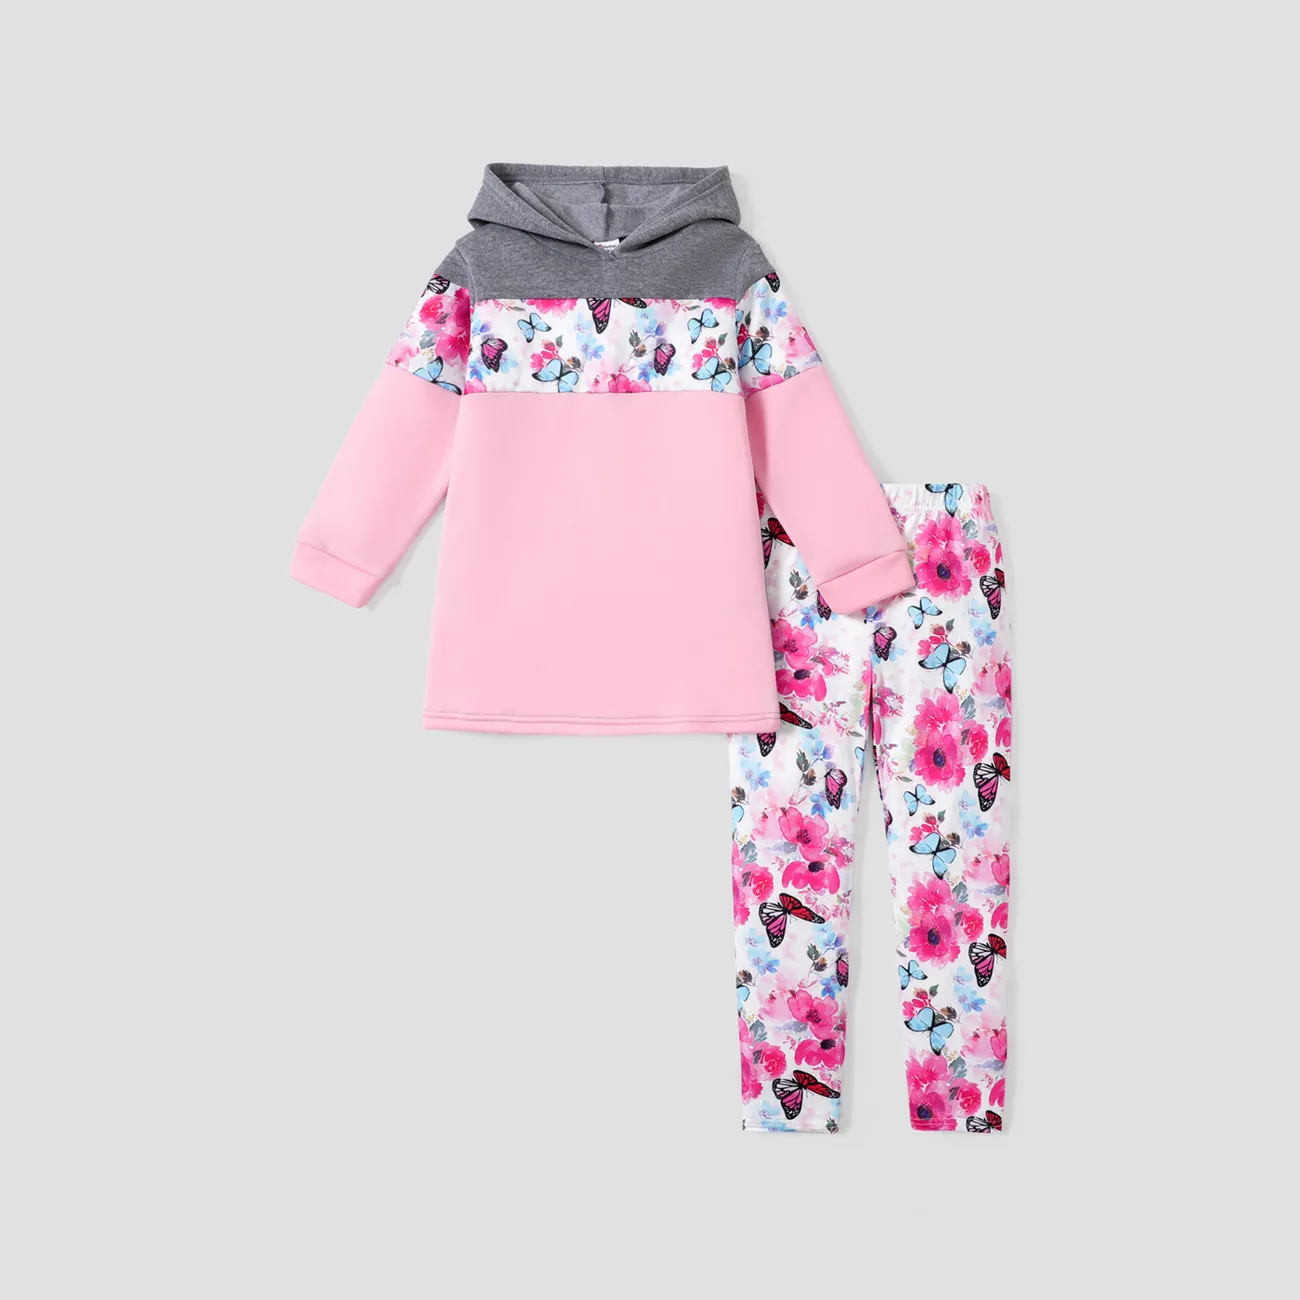 طقم بنطال بقلنسوة من قطعتين للفتيات الصغيرات بطبعة زهور ملونة ومجموعة سروال مطاطي اللون الرمادي big image 1